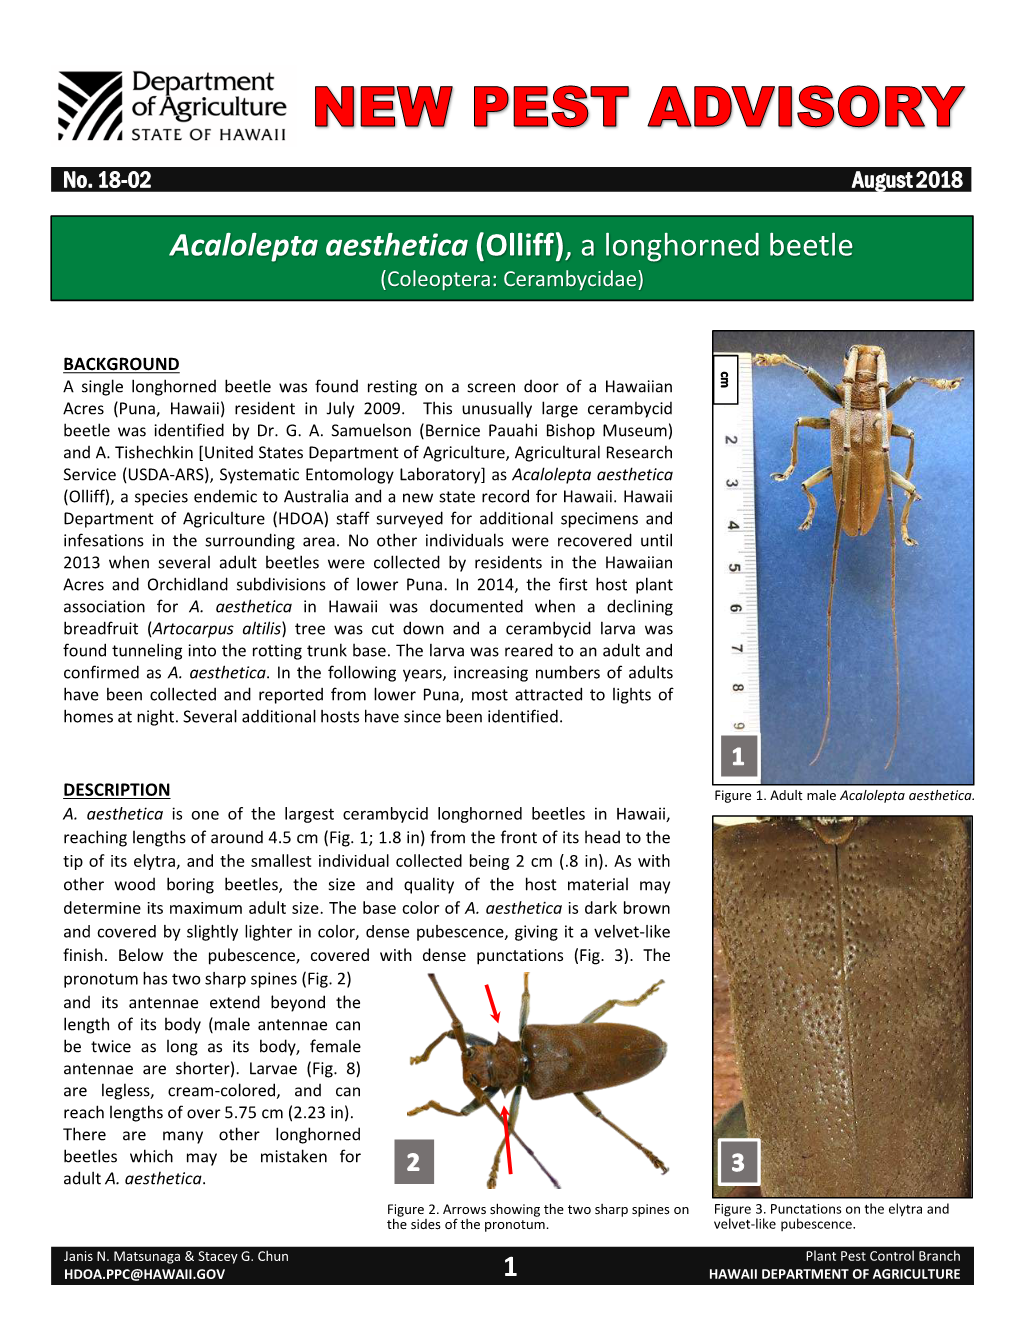 Acalolepta Aesthetica (Olliff), a Longhorned Beetle (Coleoptera: Cerambycidae)